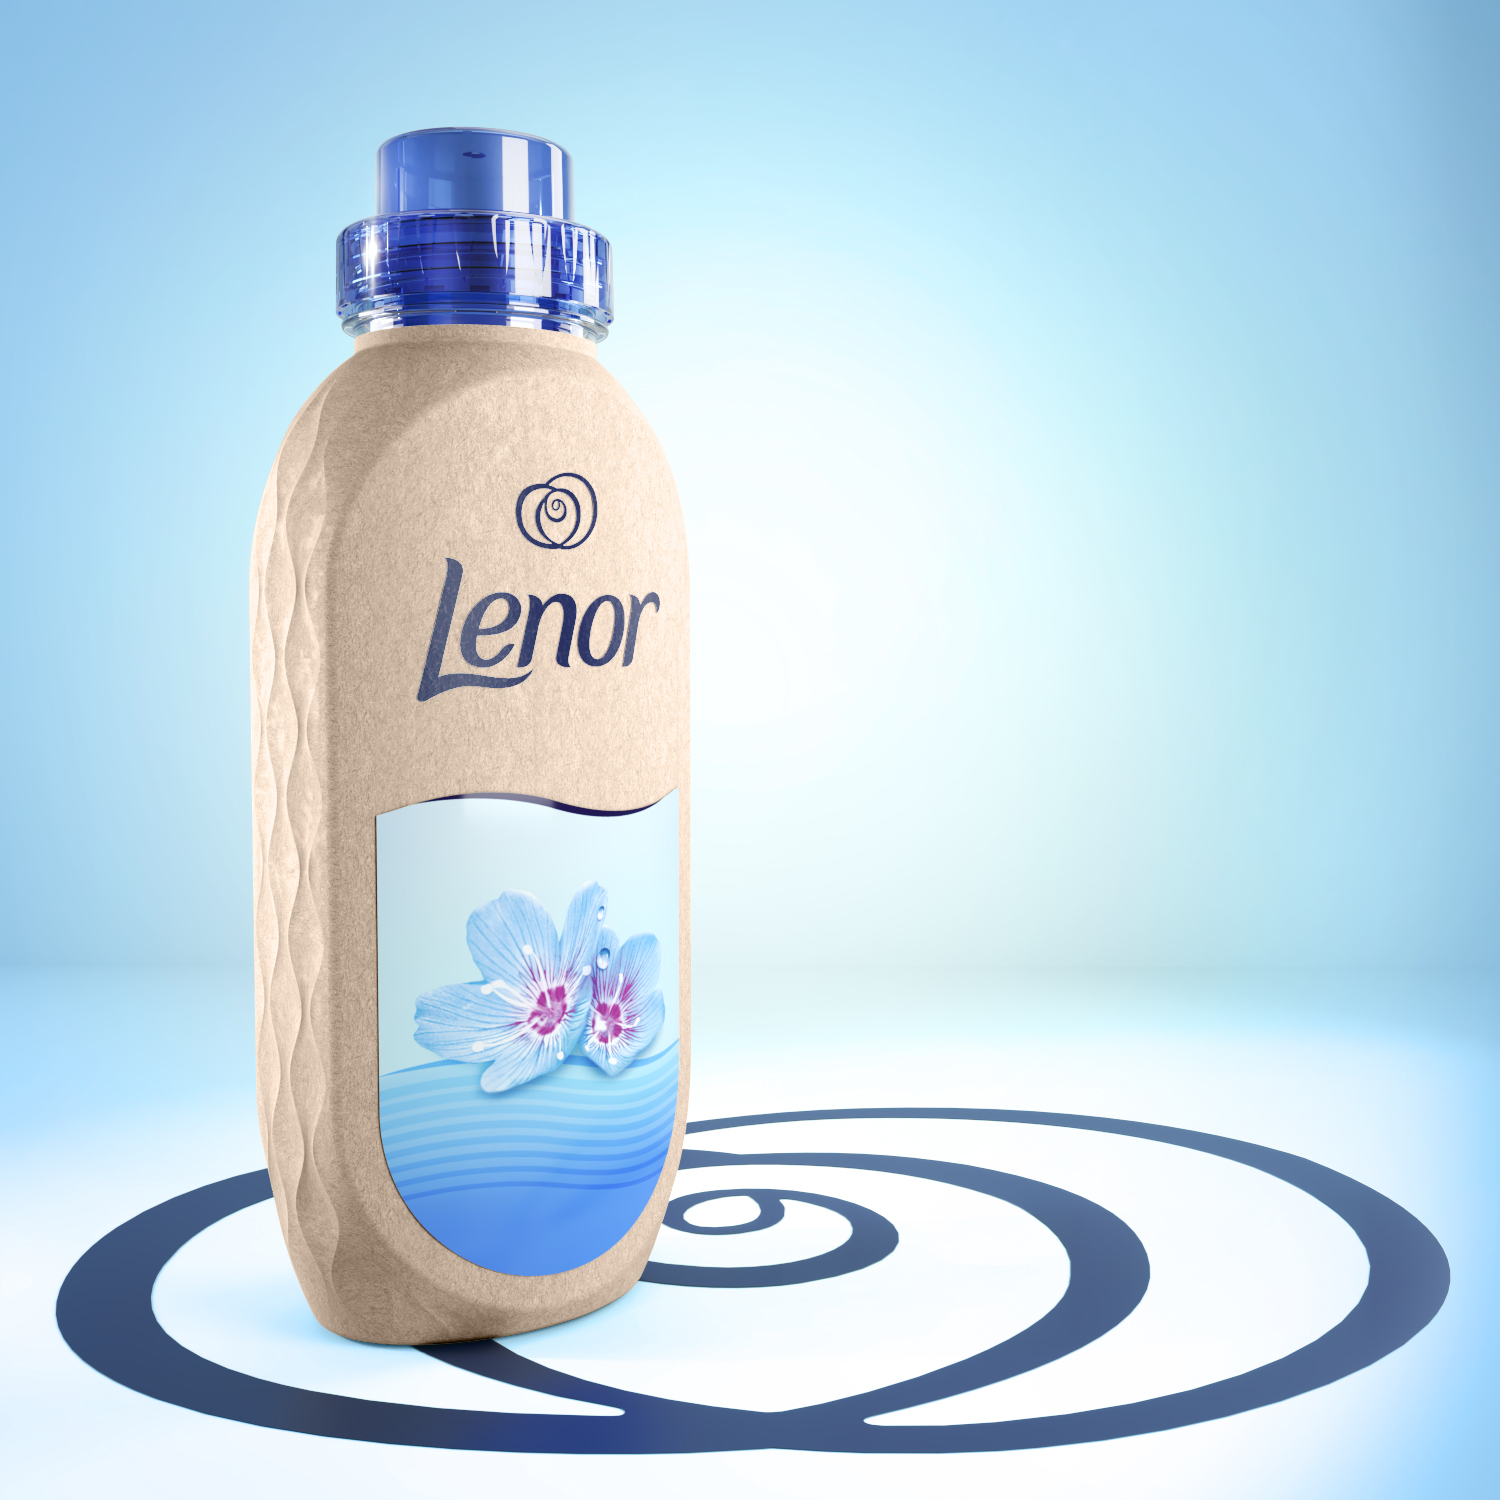 lenor bottle